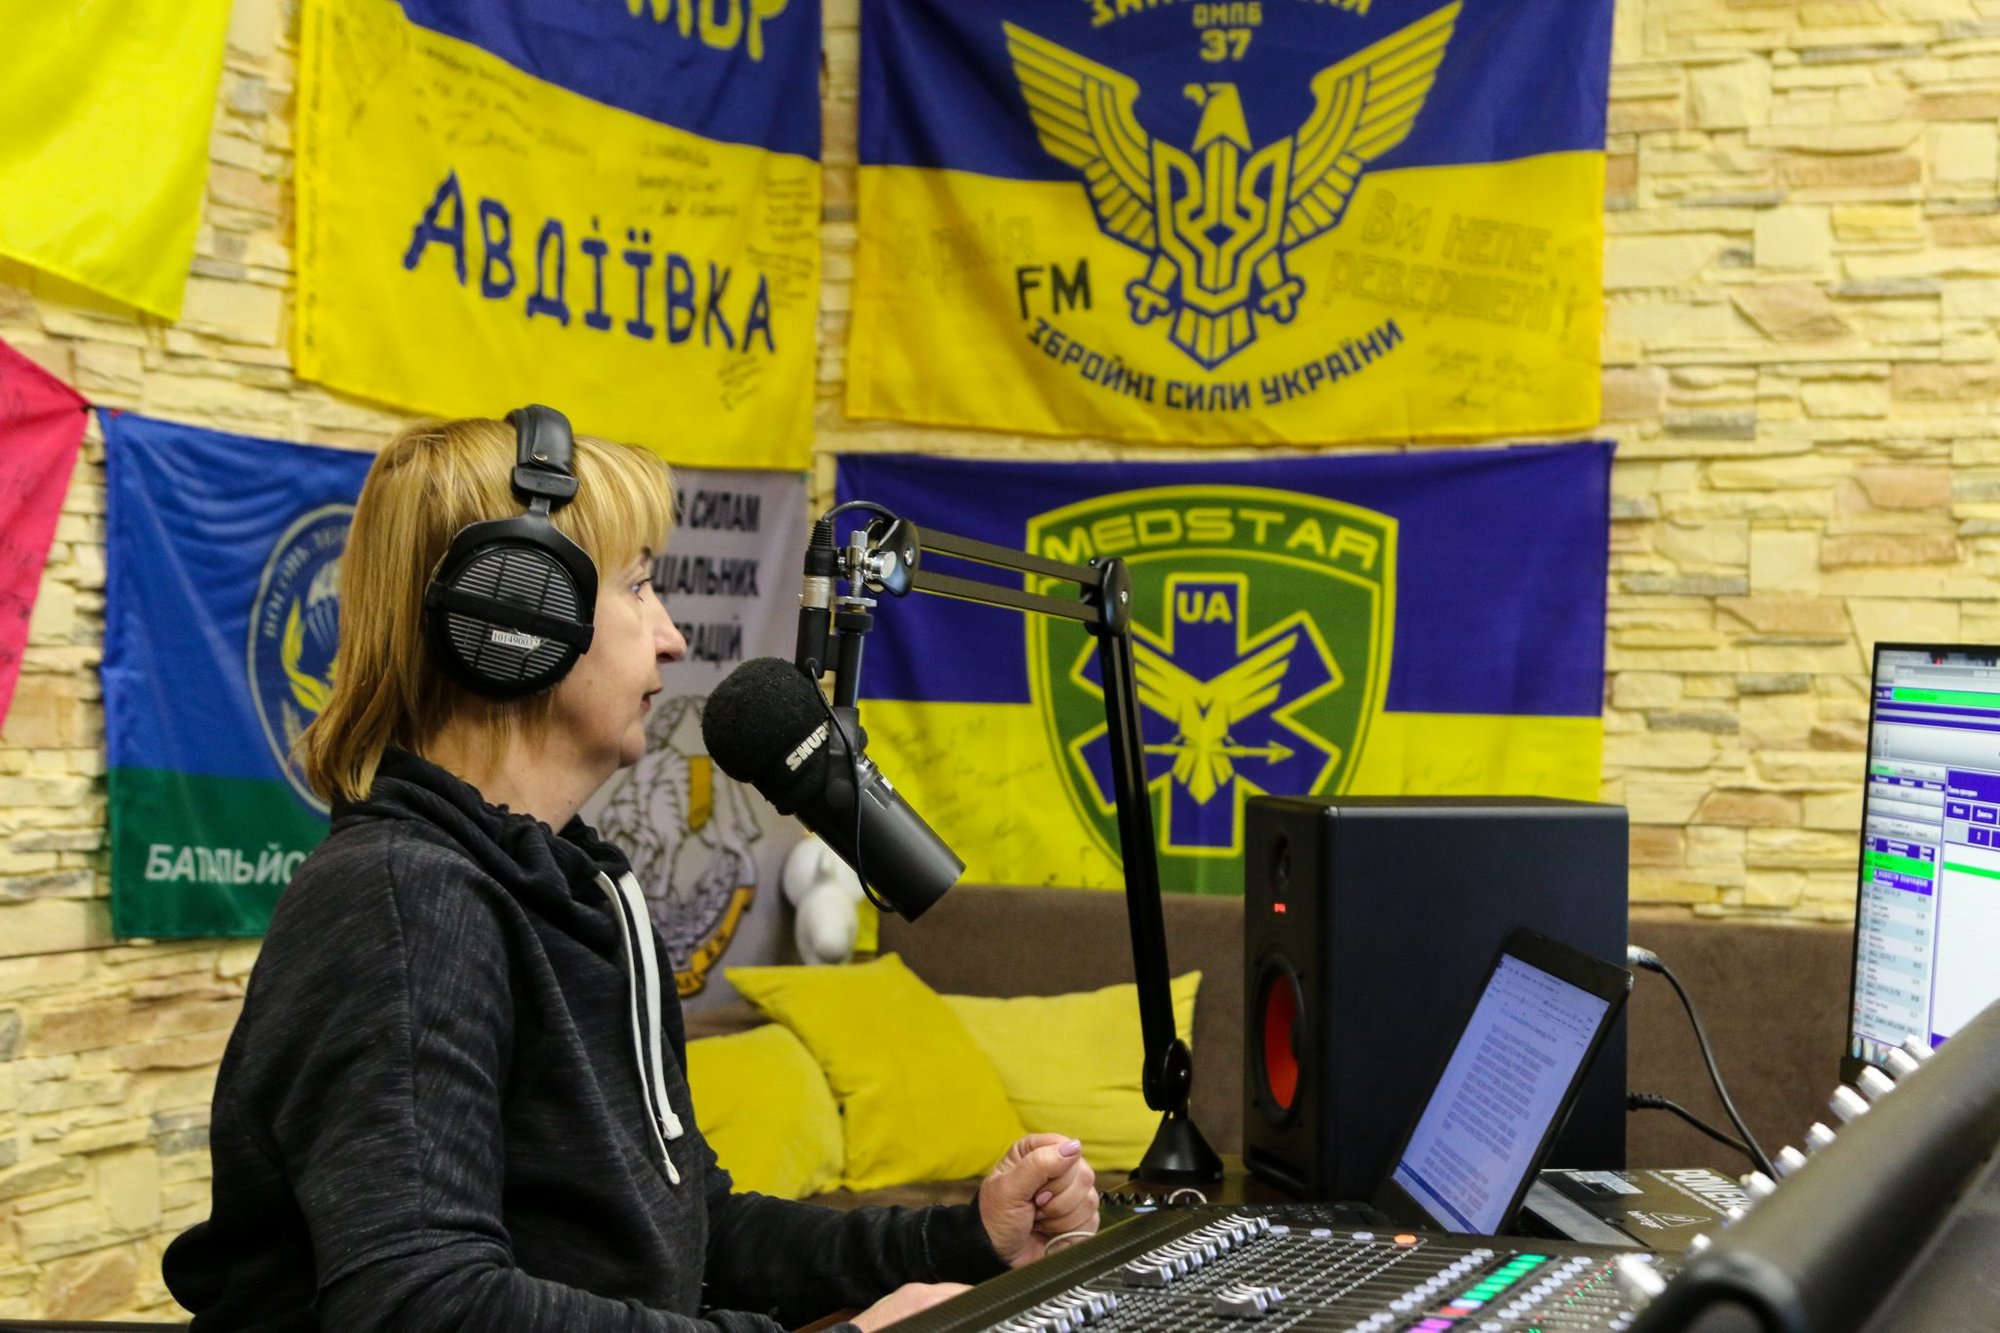 Ukraine Army FM